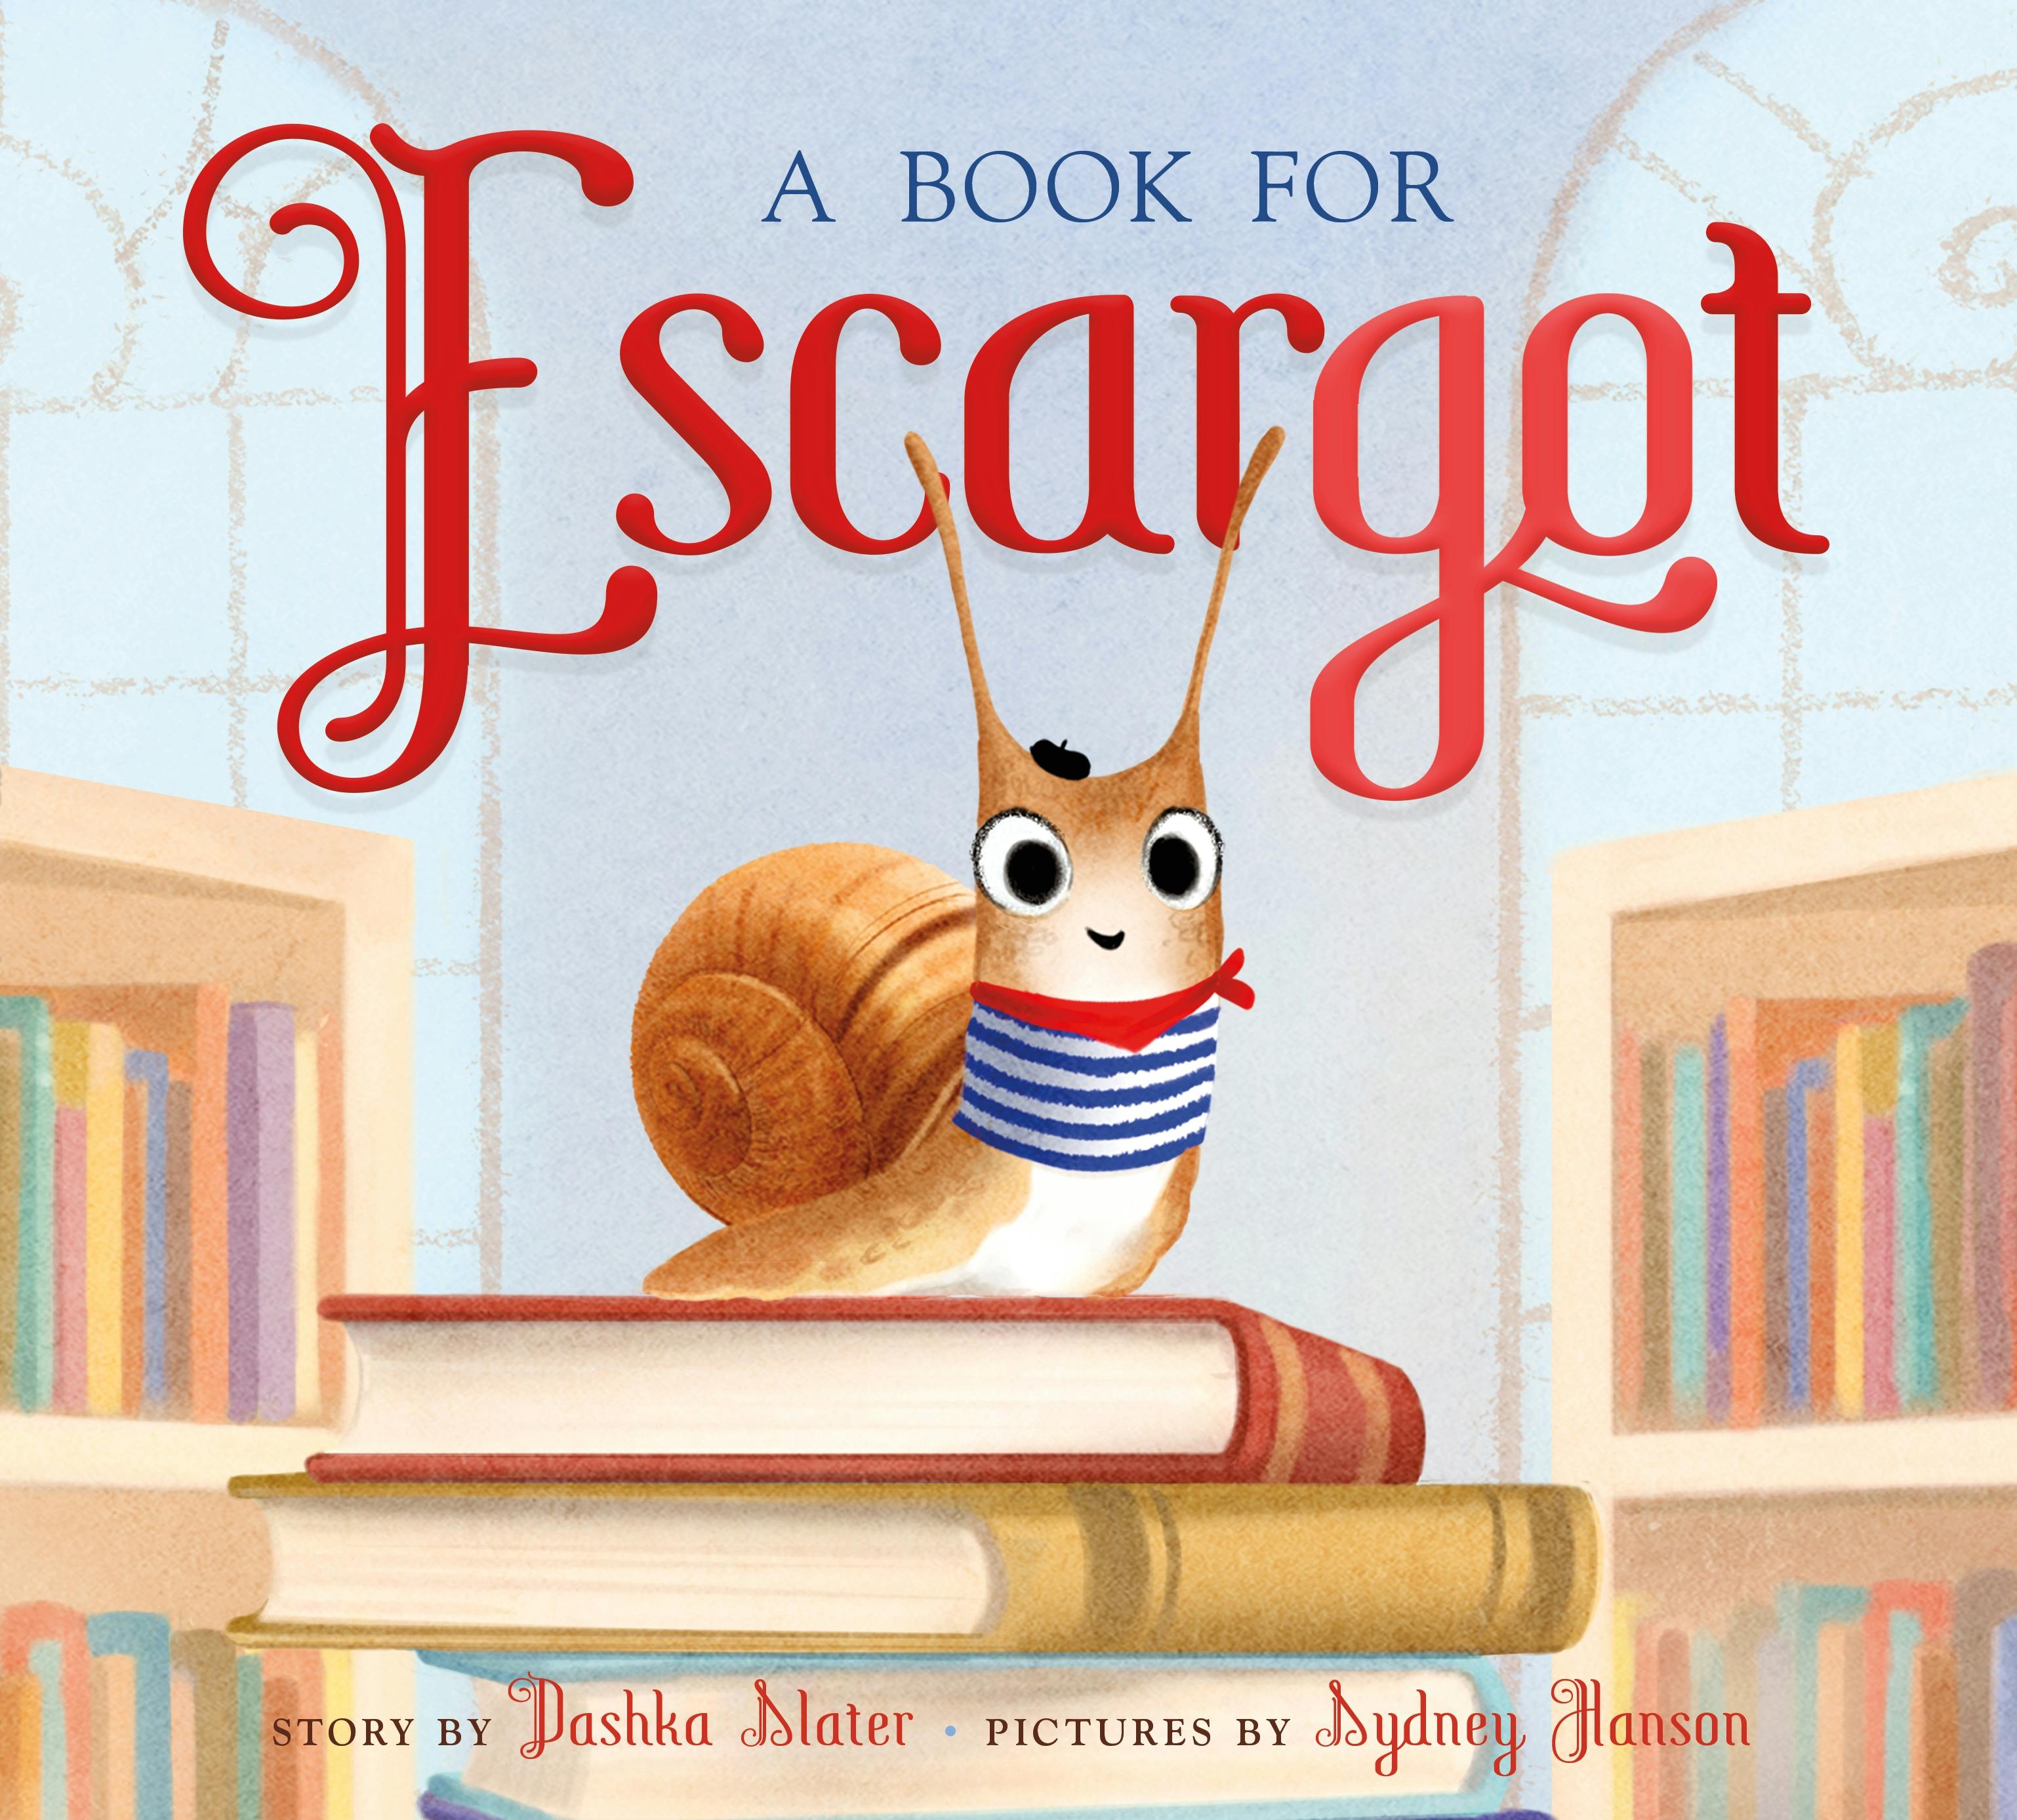 Image of A Book for Escargot